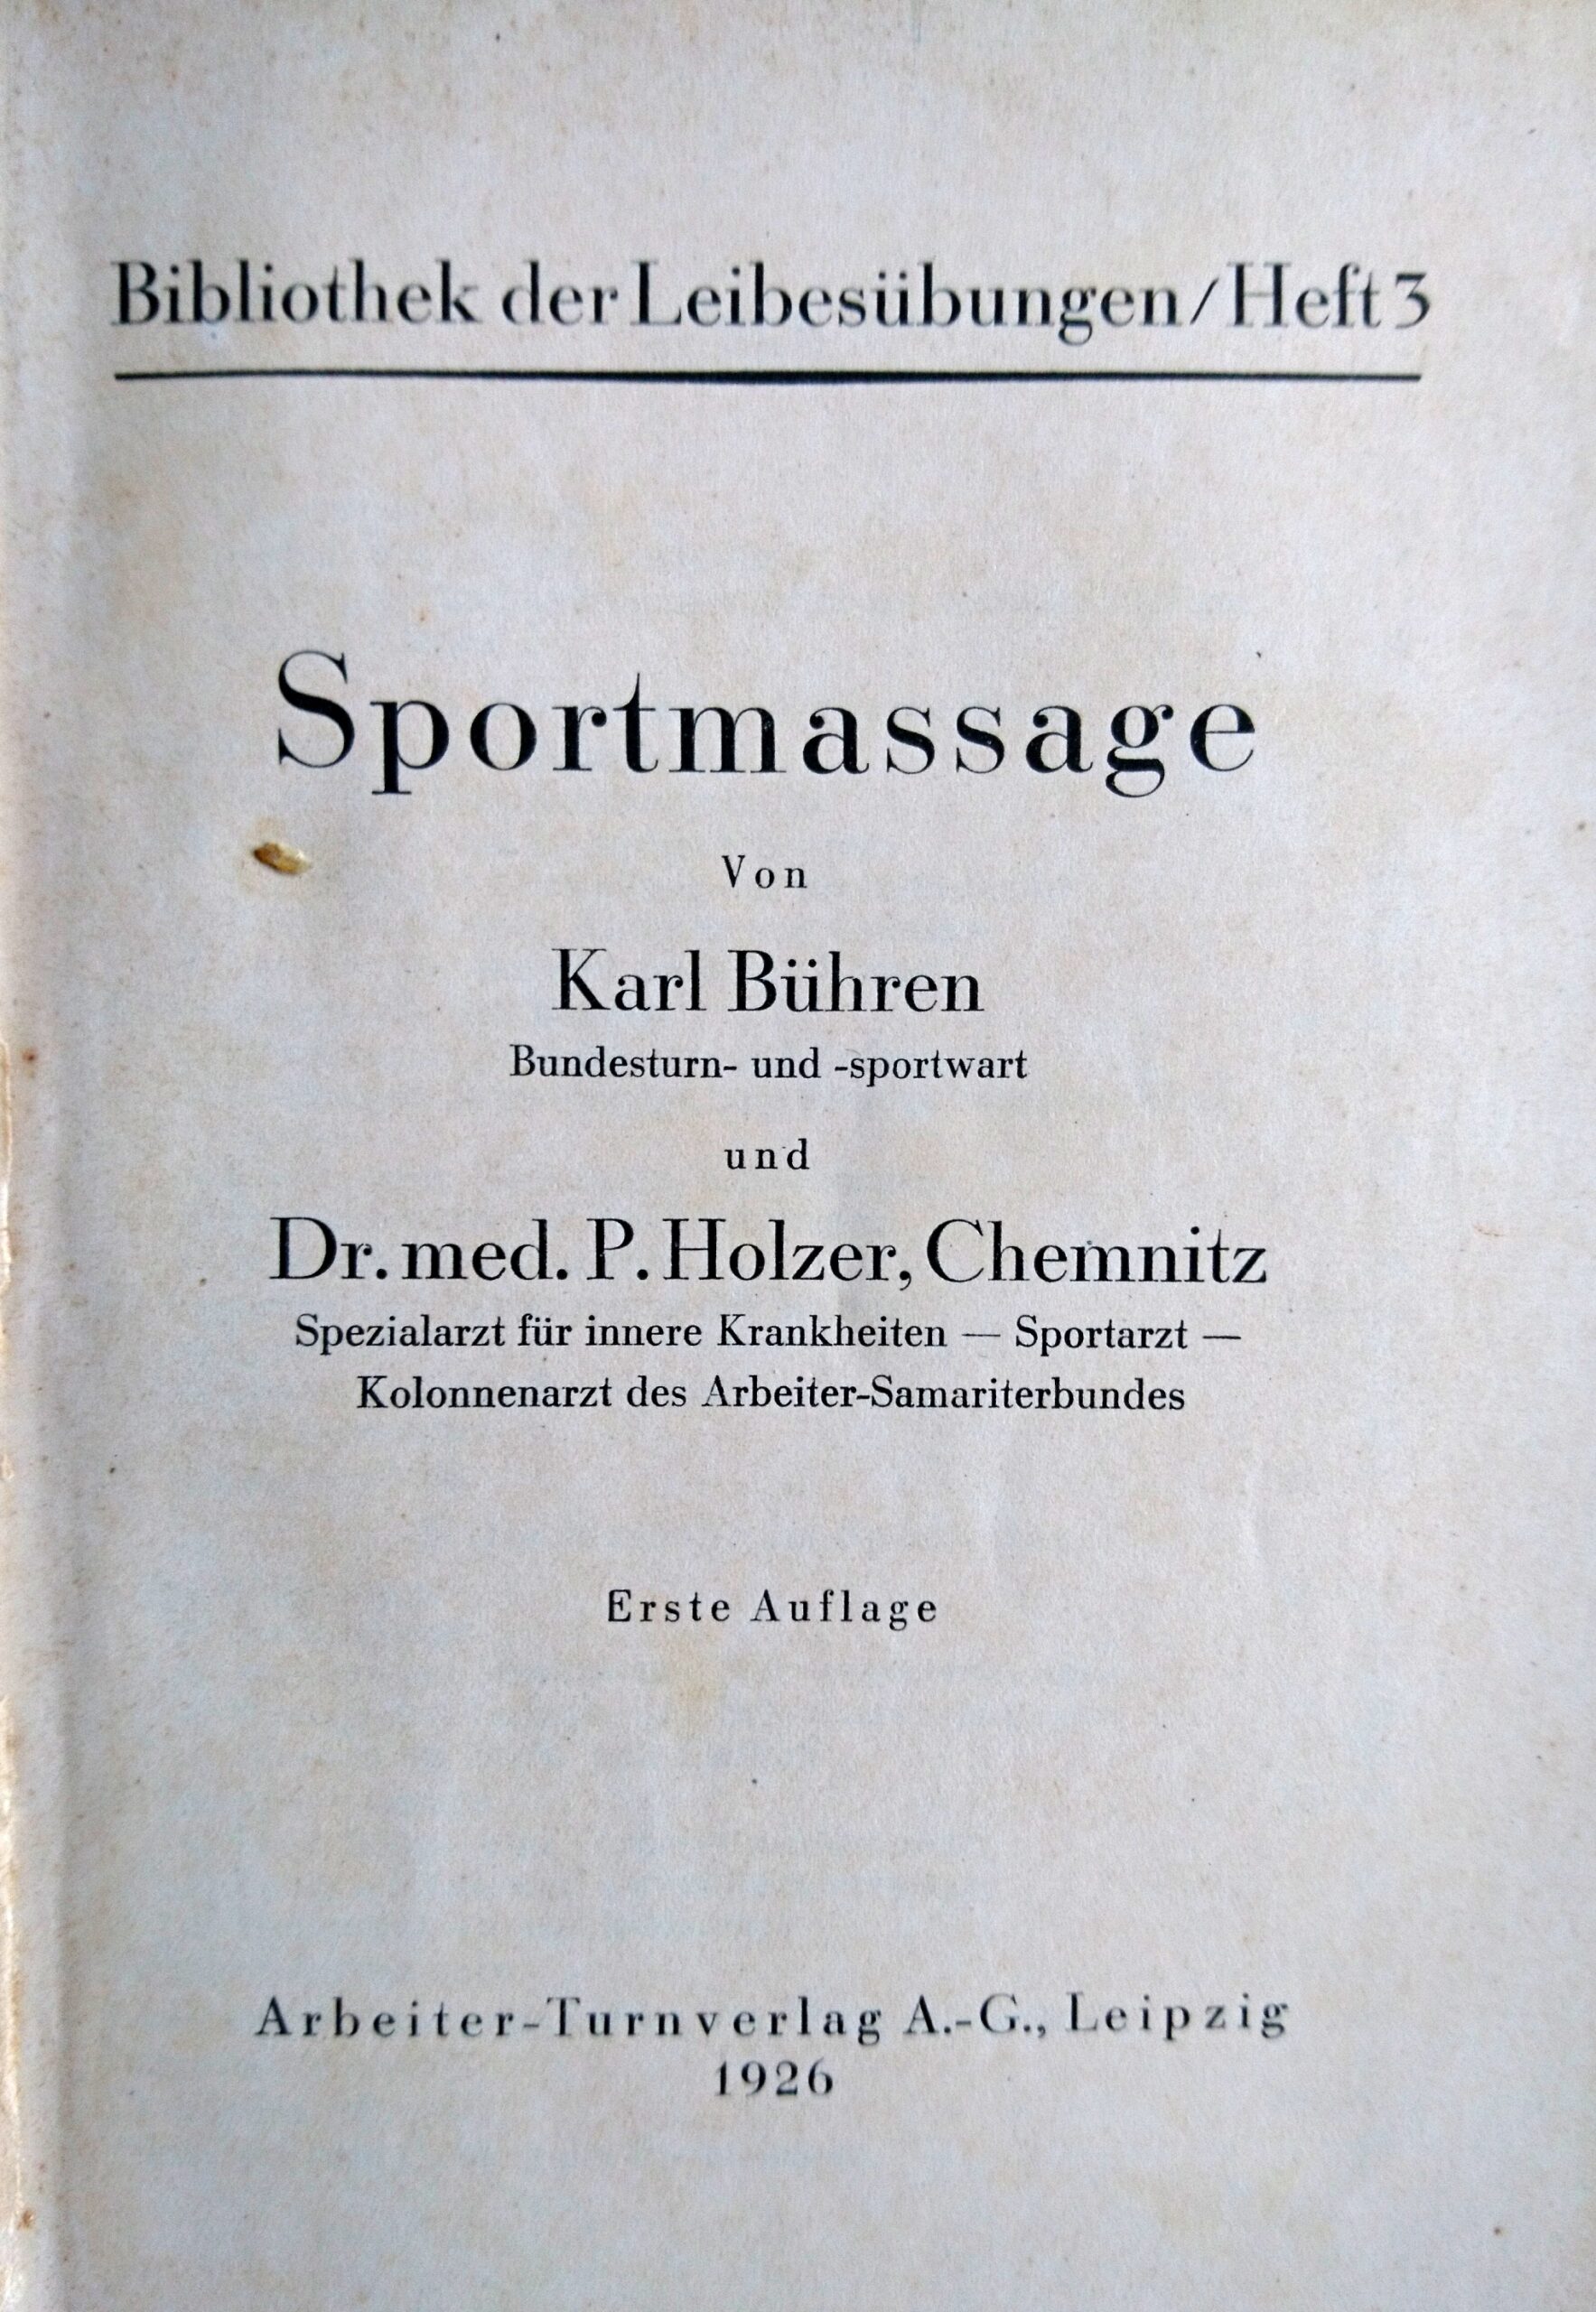 Sportmassage Bühren und Holzer. Inneres Titelblatt. Arch CH